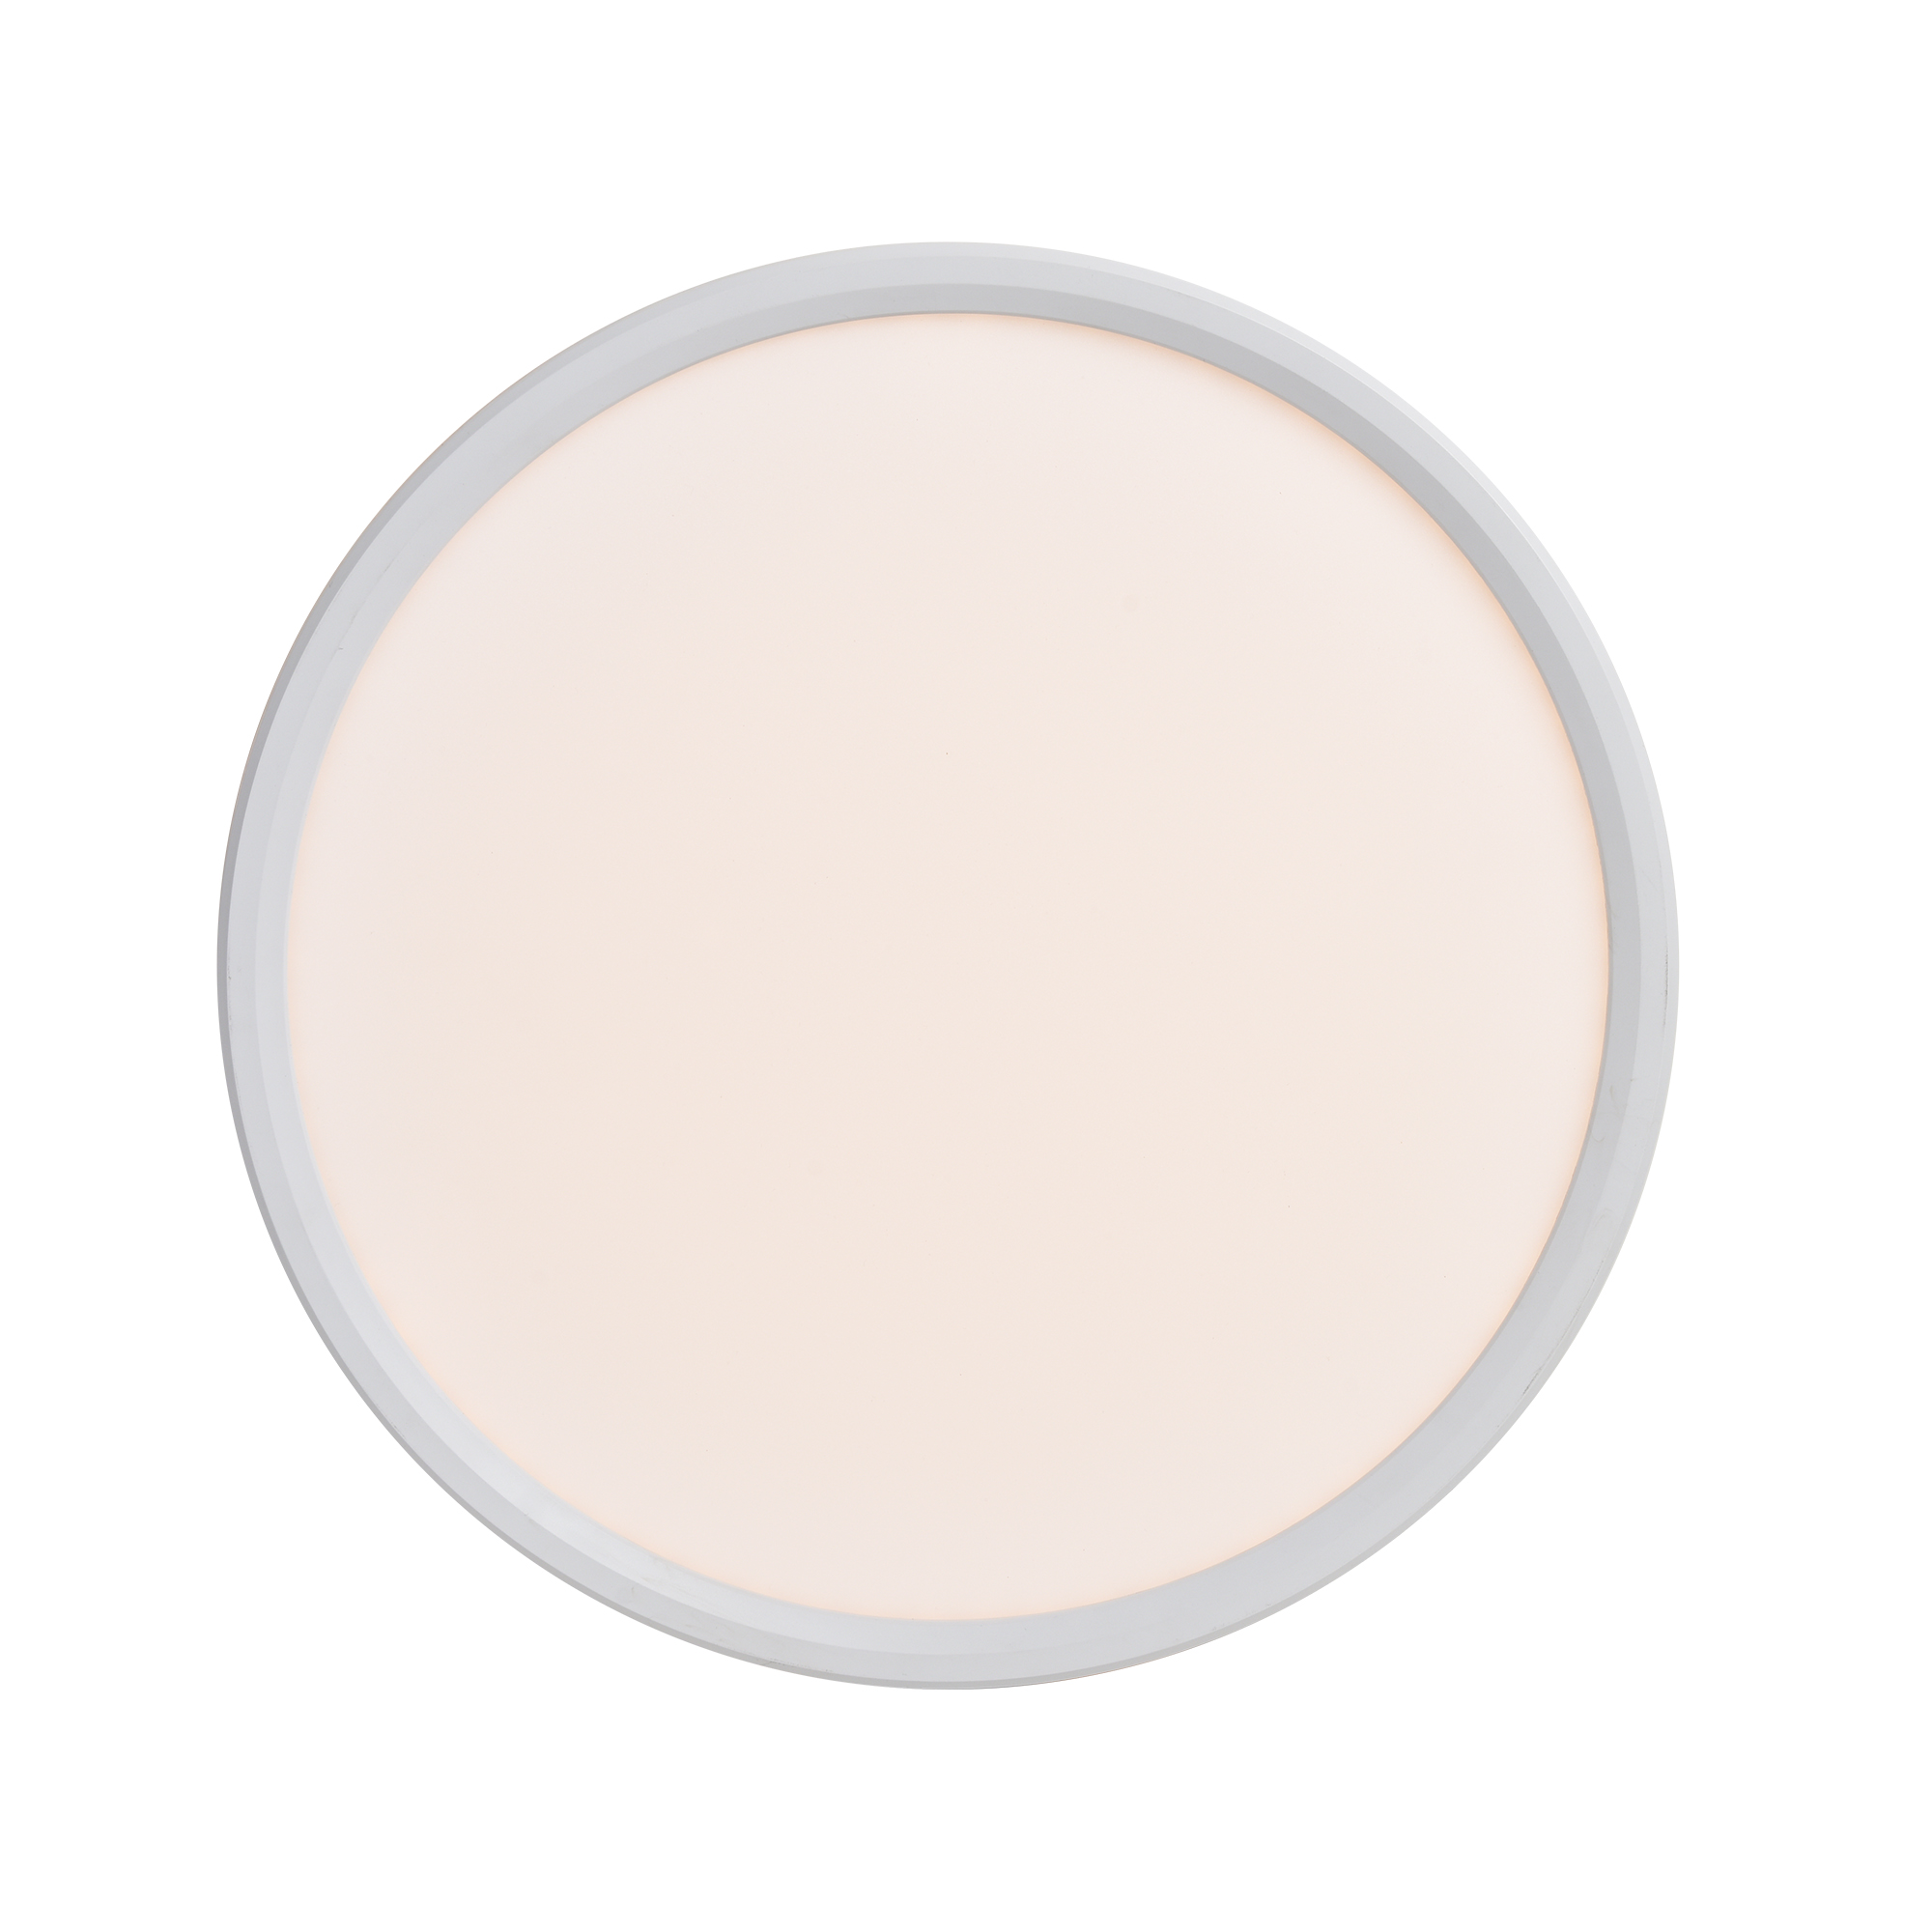 Liva Smart Colour White | | light Ceiling